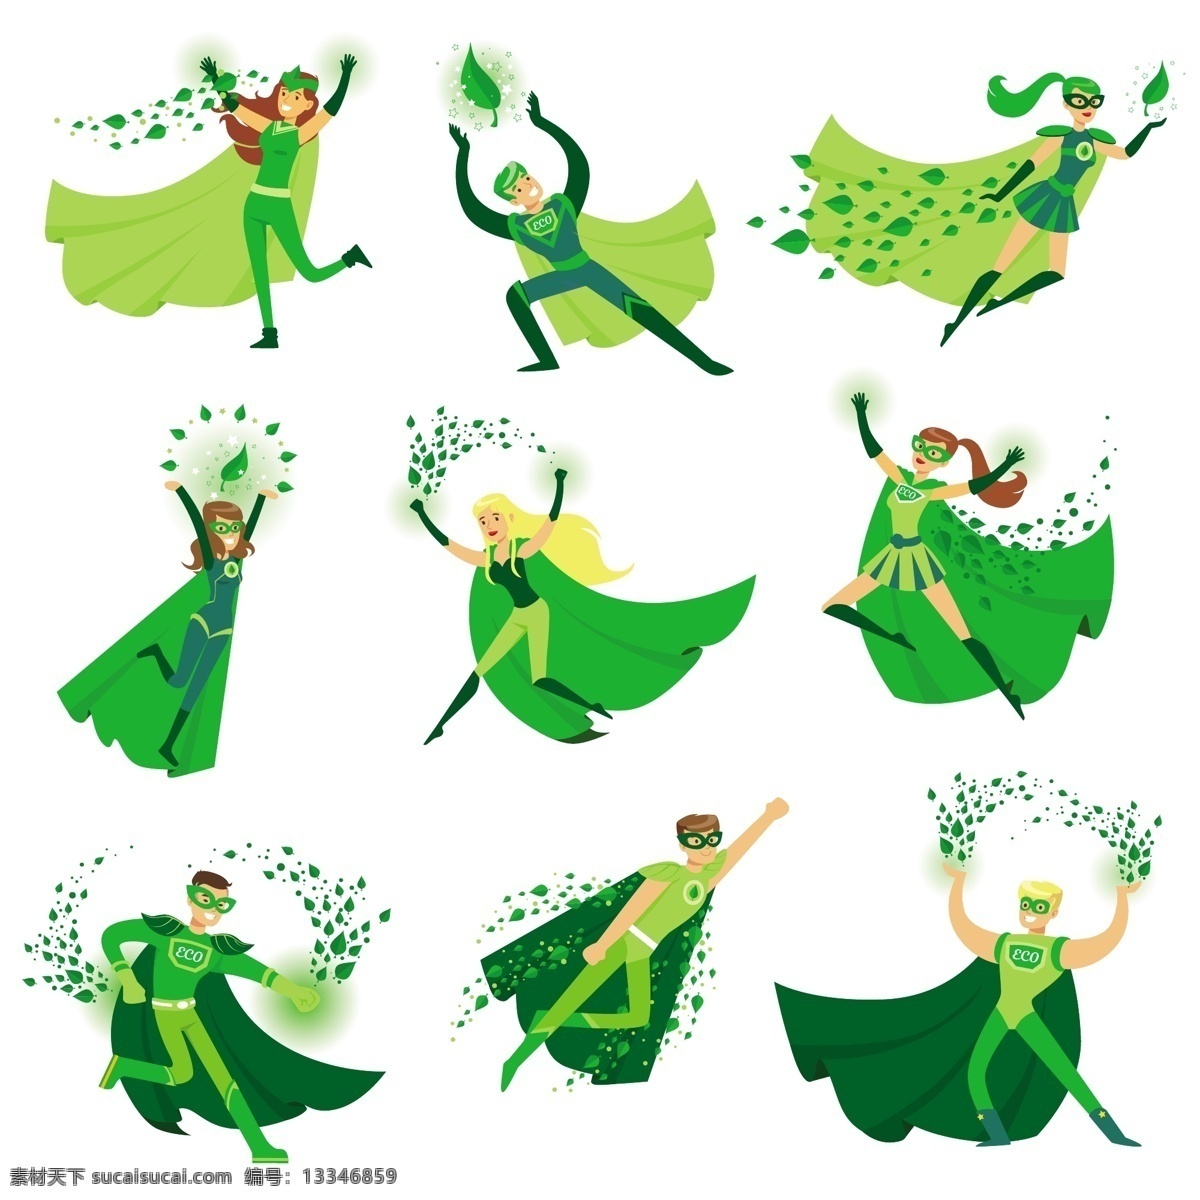 款 不同 形态 绿色 卡通 男女 超人 奔跑 动作 造型 艺术 勇敢 卡通人物 斗篷 服装设计 飞行 英俊 英雄 图标 插图 面具 力量 强大 超 动漫动画 动漫人物